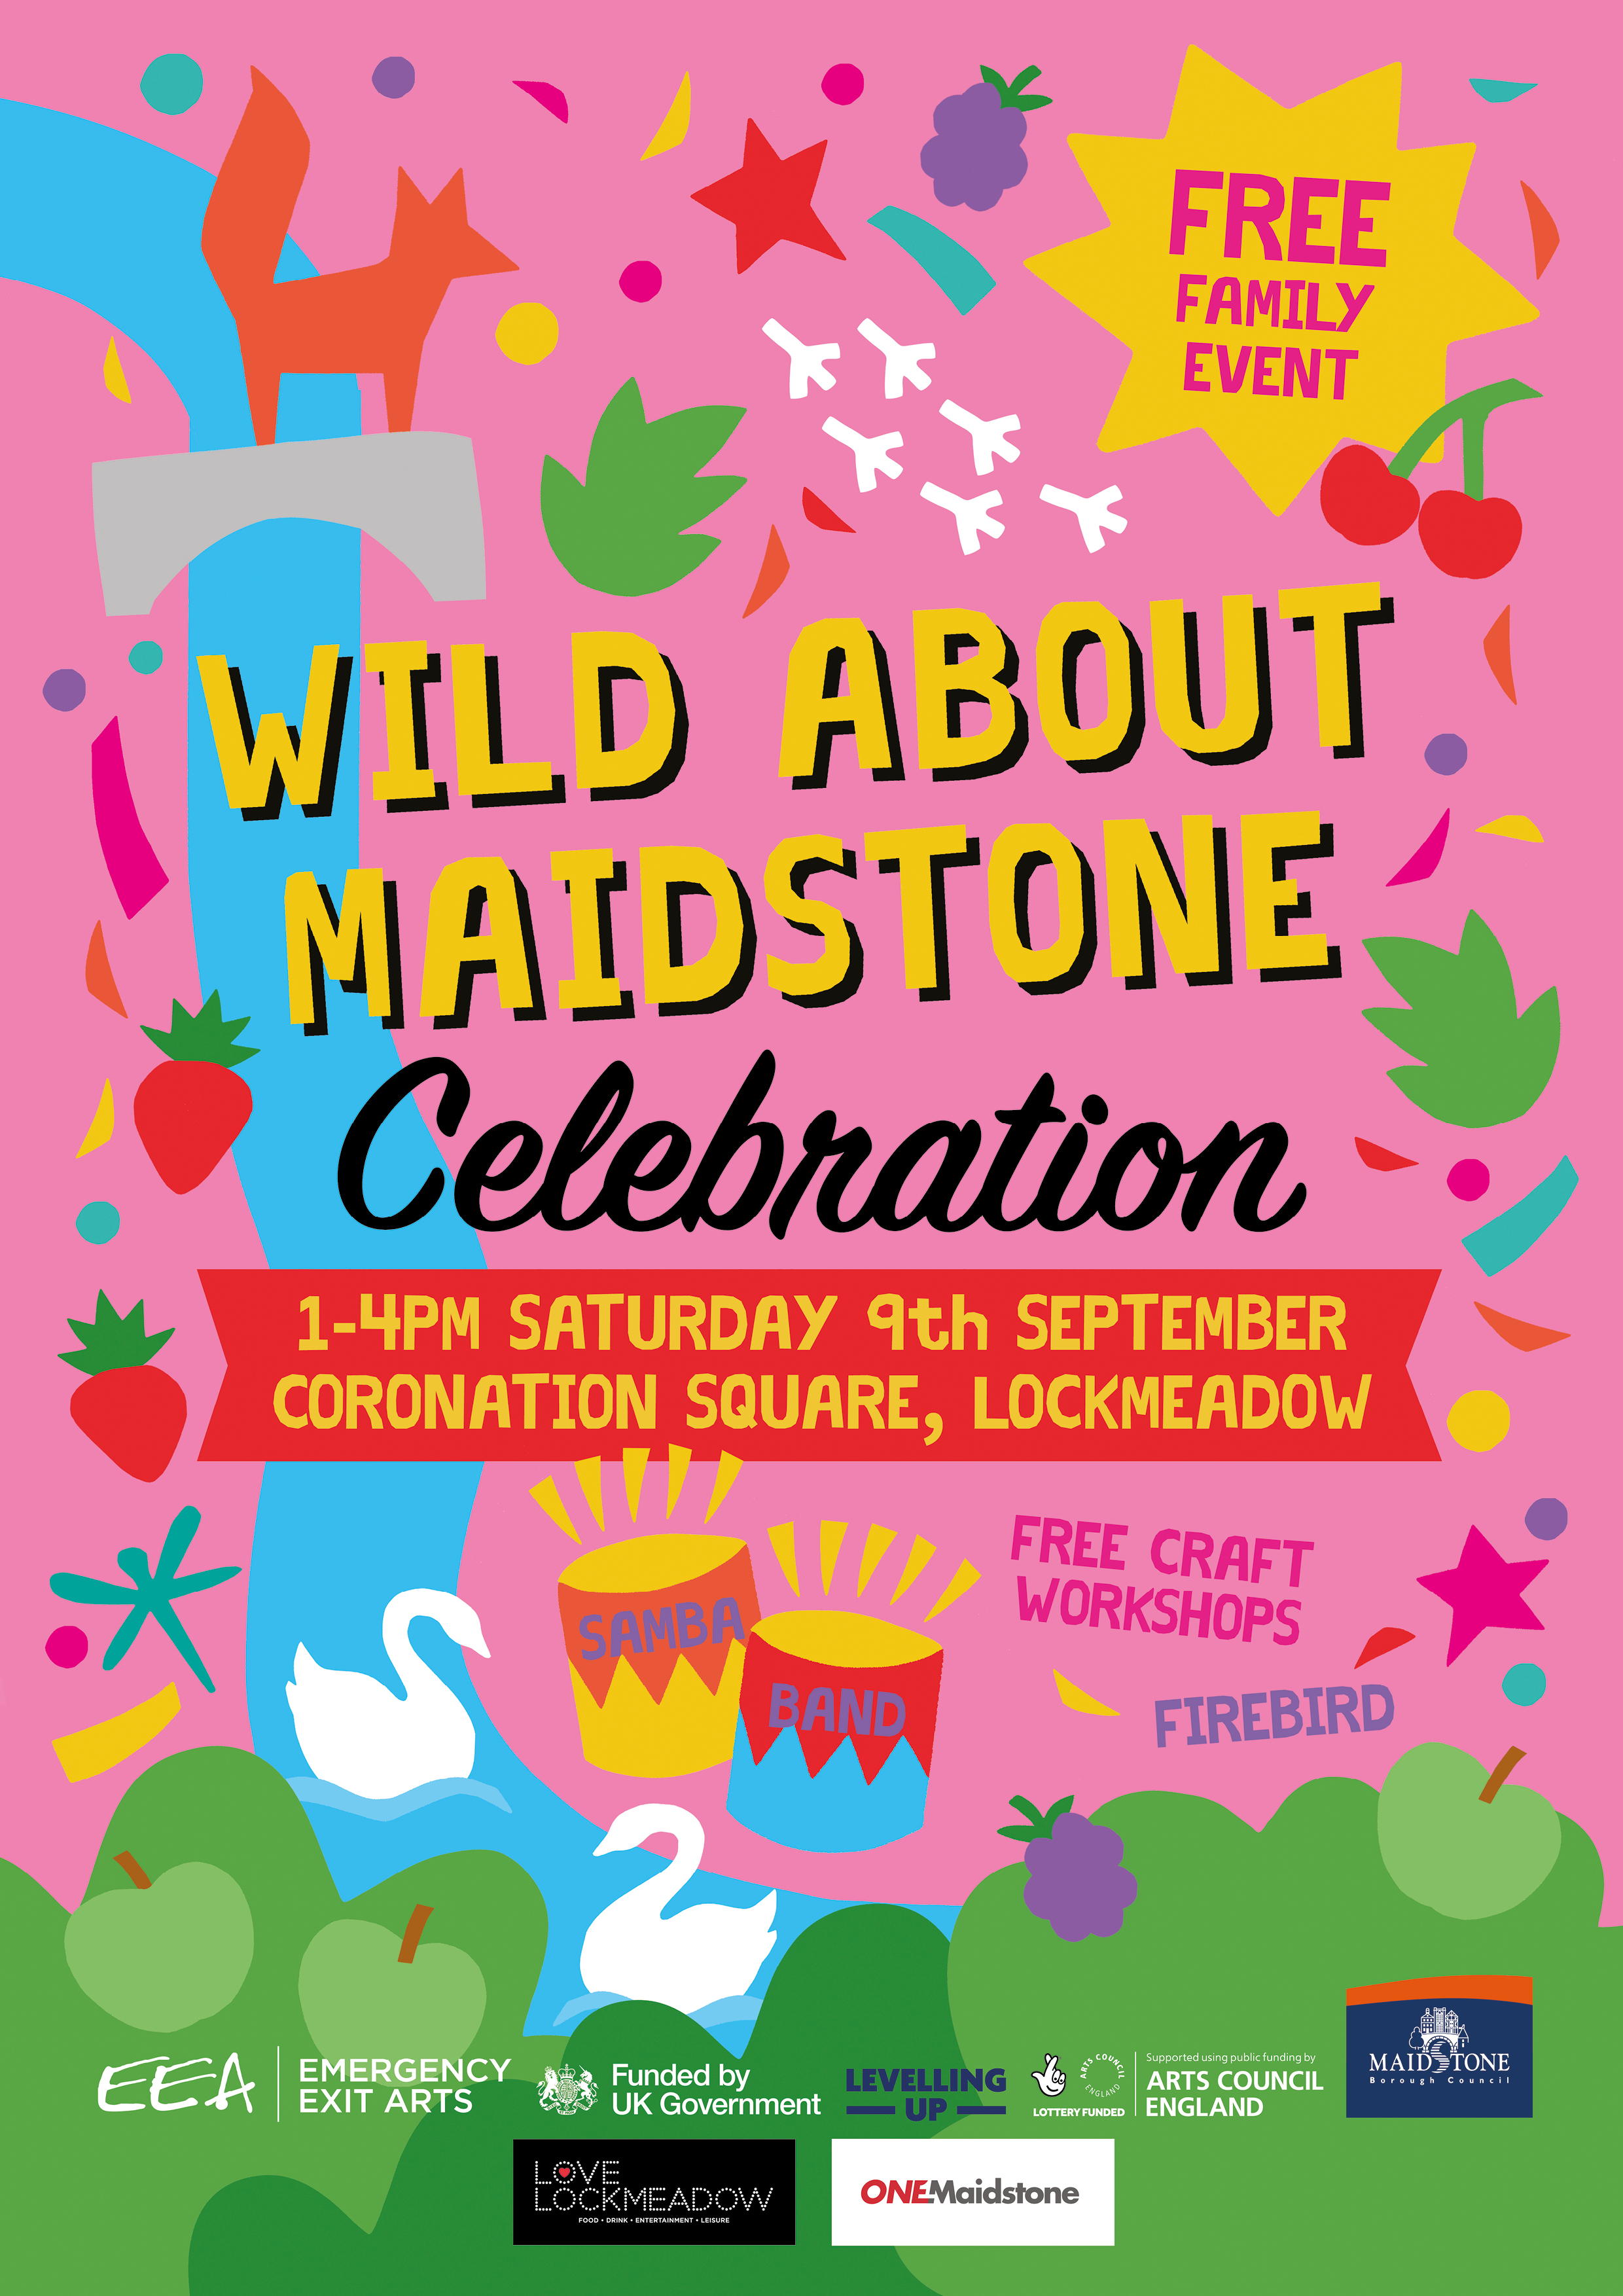  ‘Wild about Maidstone celebration’ image